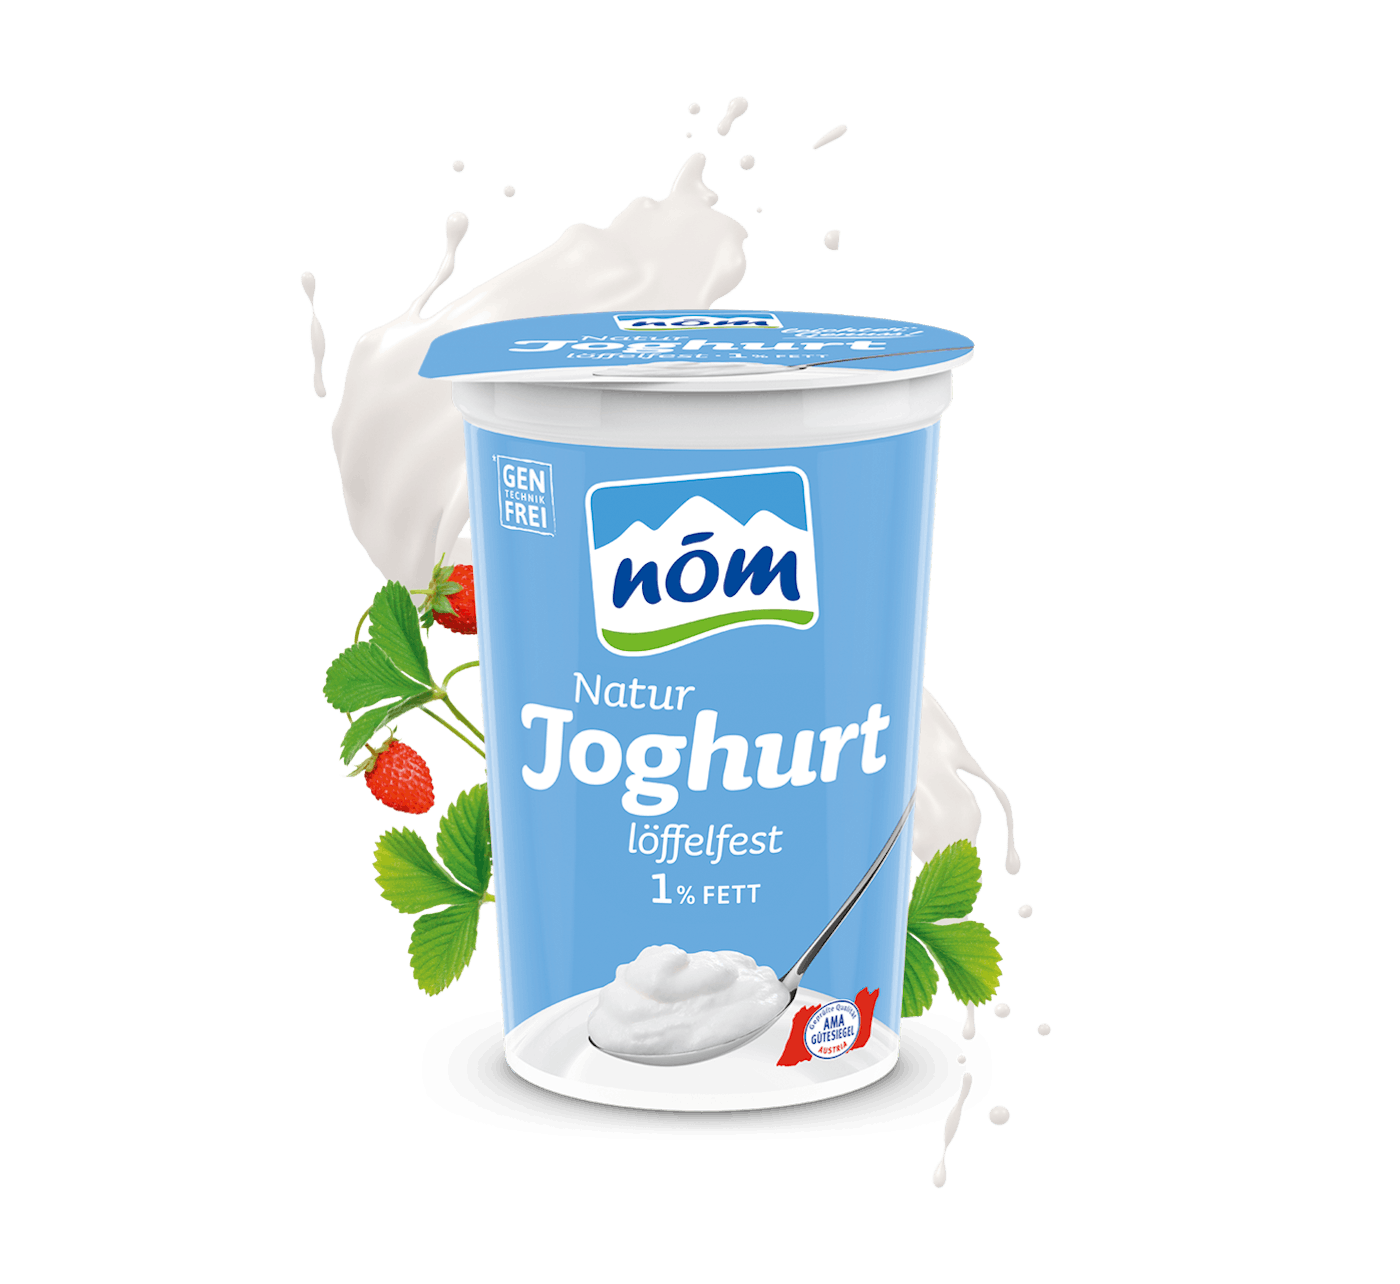 NÖM Natur Joghurt 1 % Fett im 250 g Becher mit Blumen